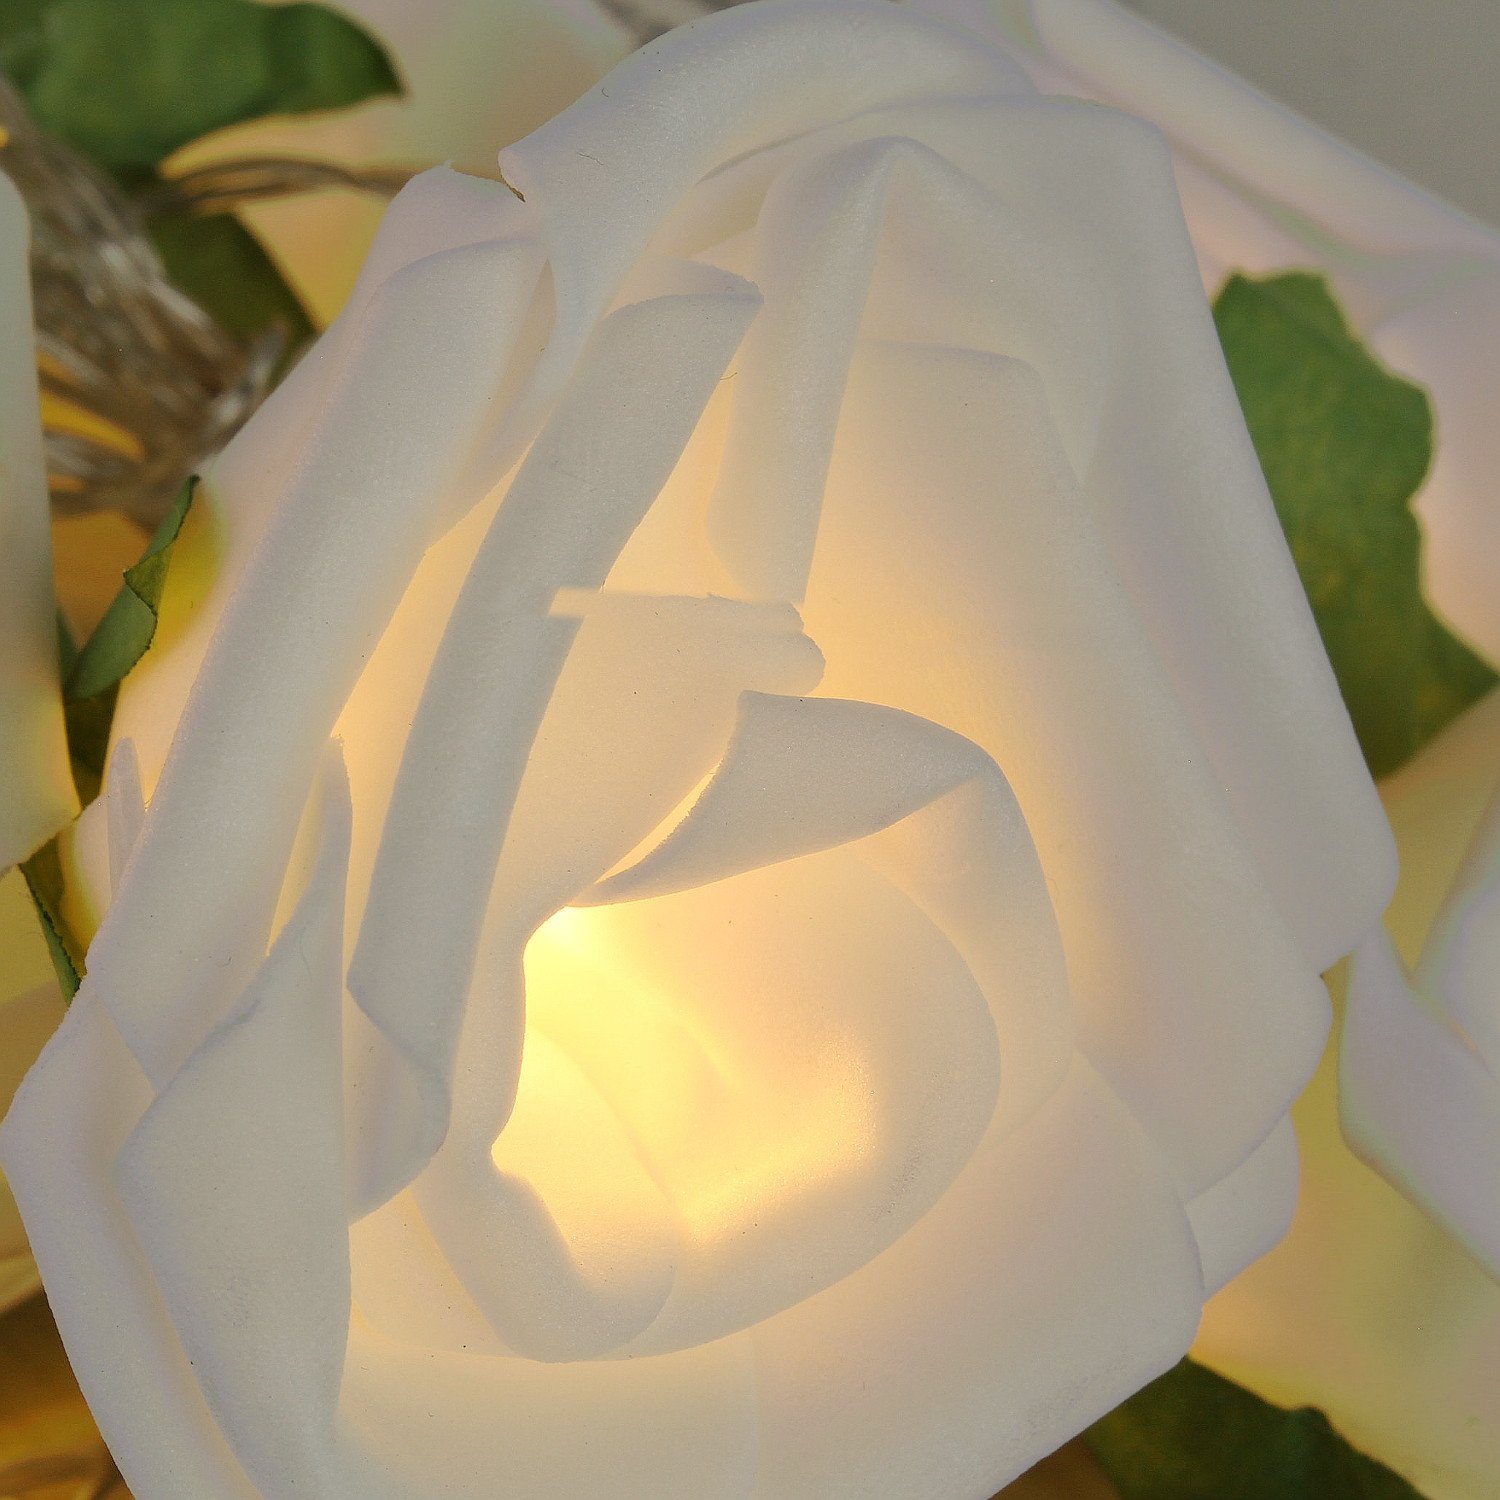 cm weiß 10 Macosa 175 Warmweiß LED-Lichterkette Rosen LED Home Weiß batteriebetrieb Romantik, Lichterkette mit Kunstblumen